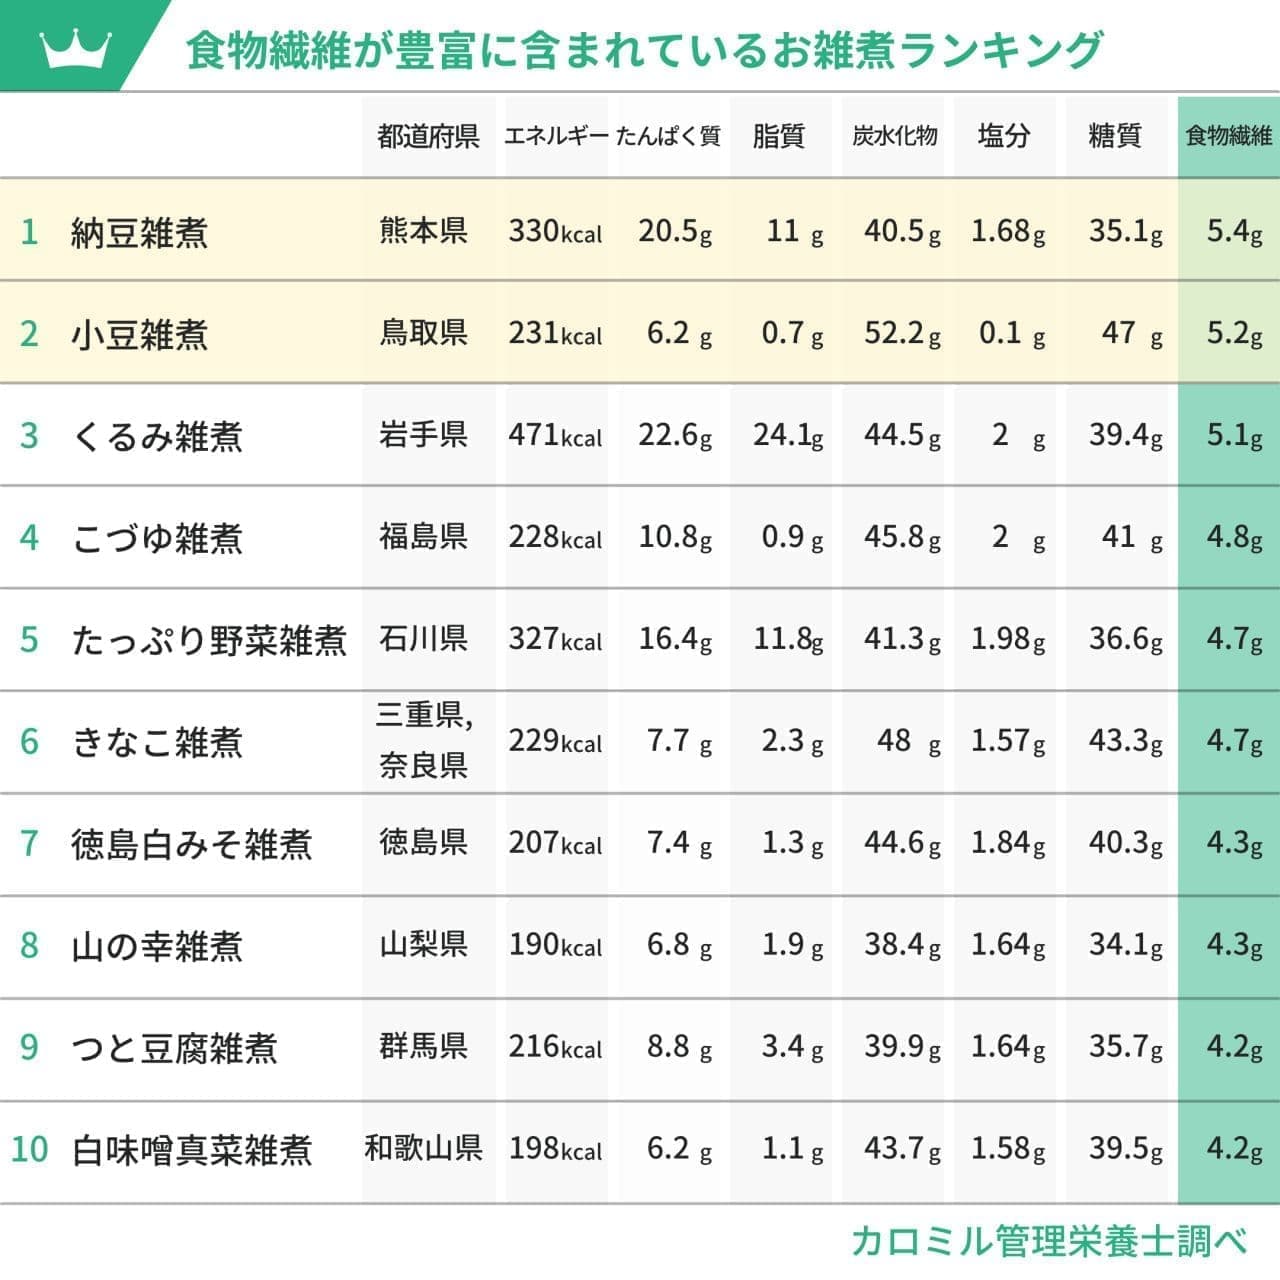 最も低カロリーなお雑煮は山口県の「かぶ雑煮」栄養素やカロリー別 日本全国お雑煮ランキング！